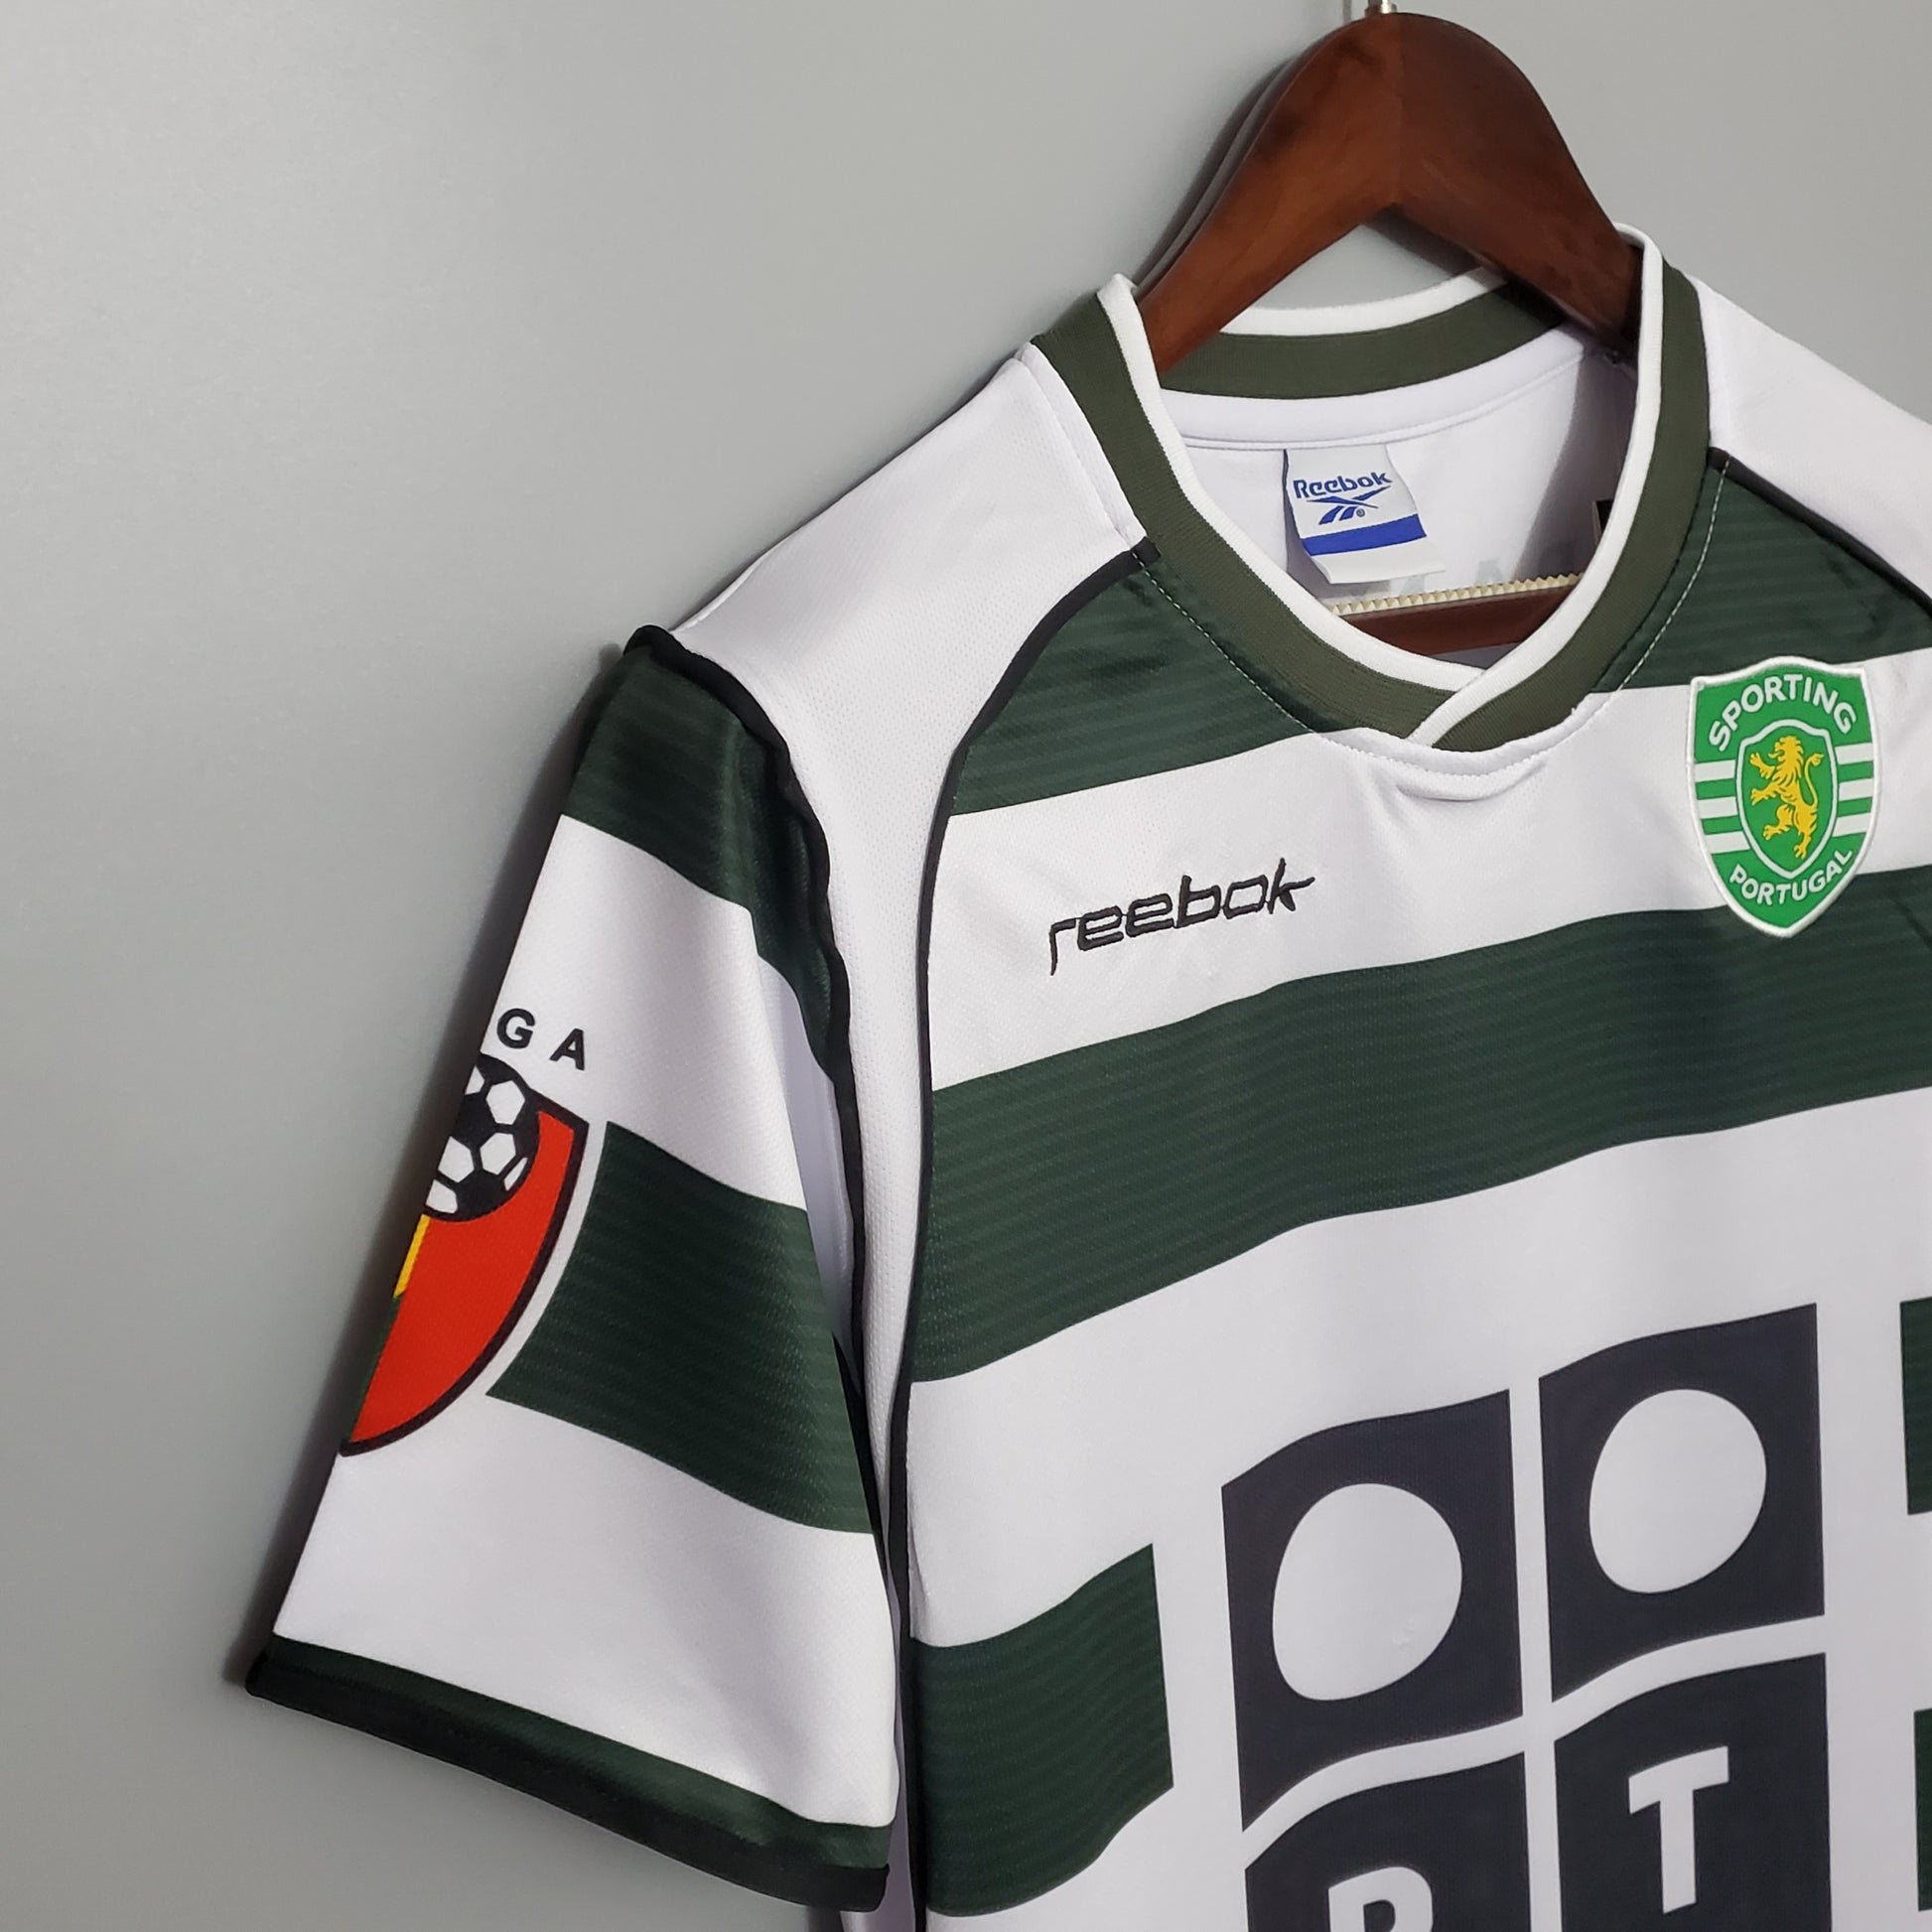 Camiseta Sporting de Lisboa Primera Equipación Retro Clásica